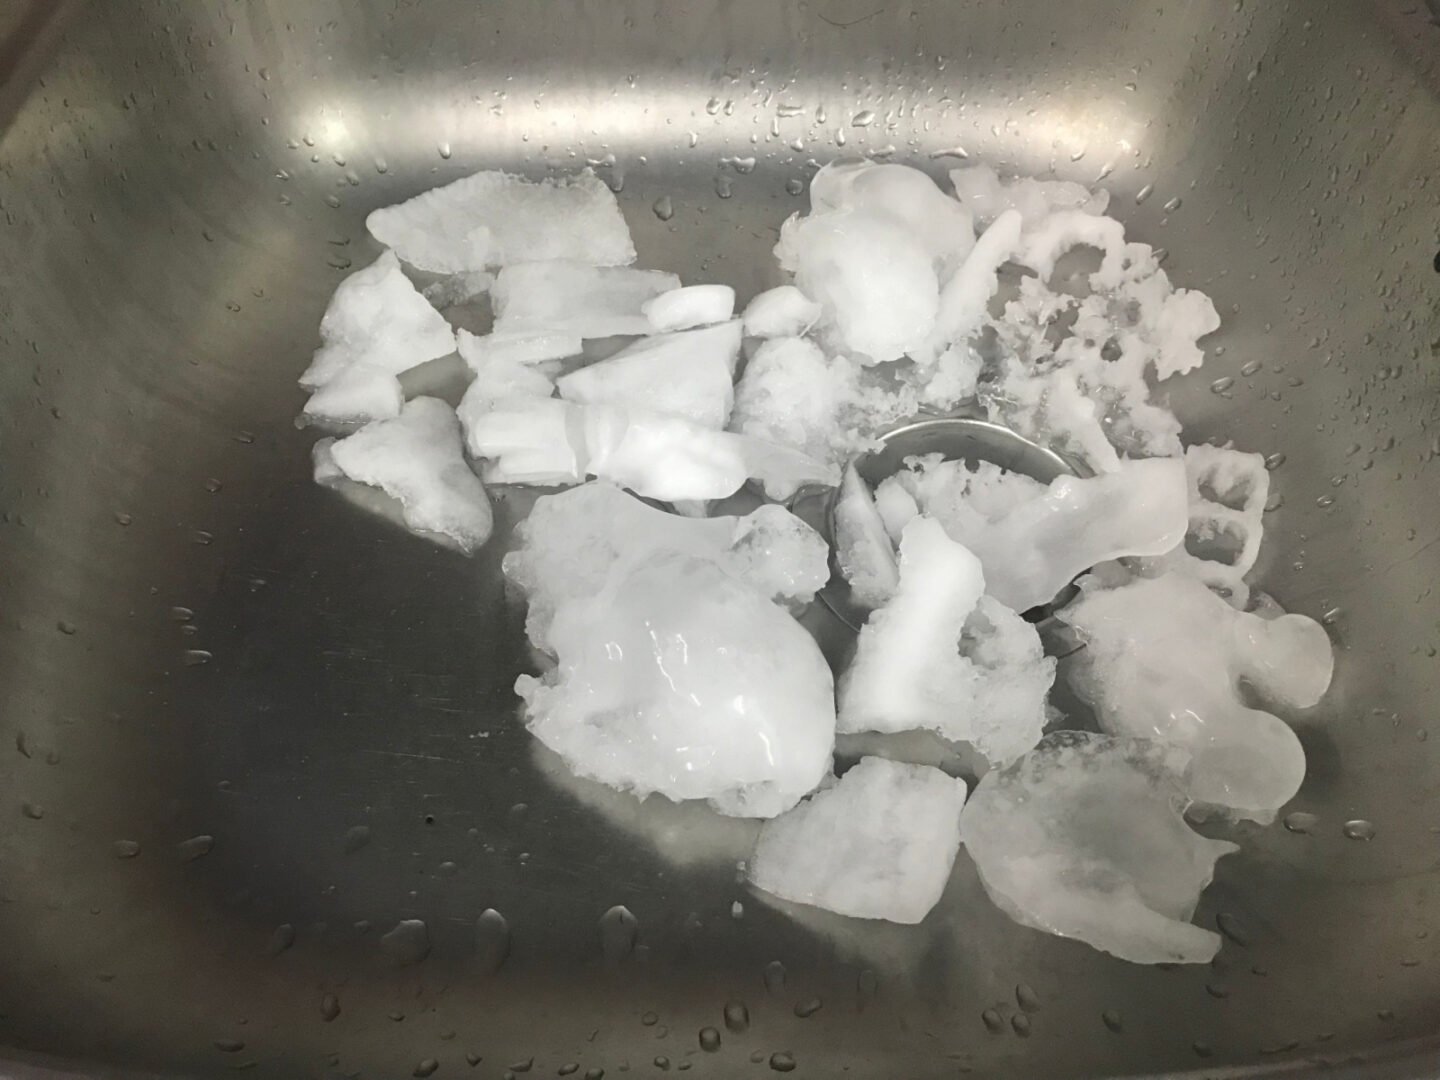 ice pieces in kitchen sink